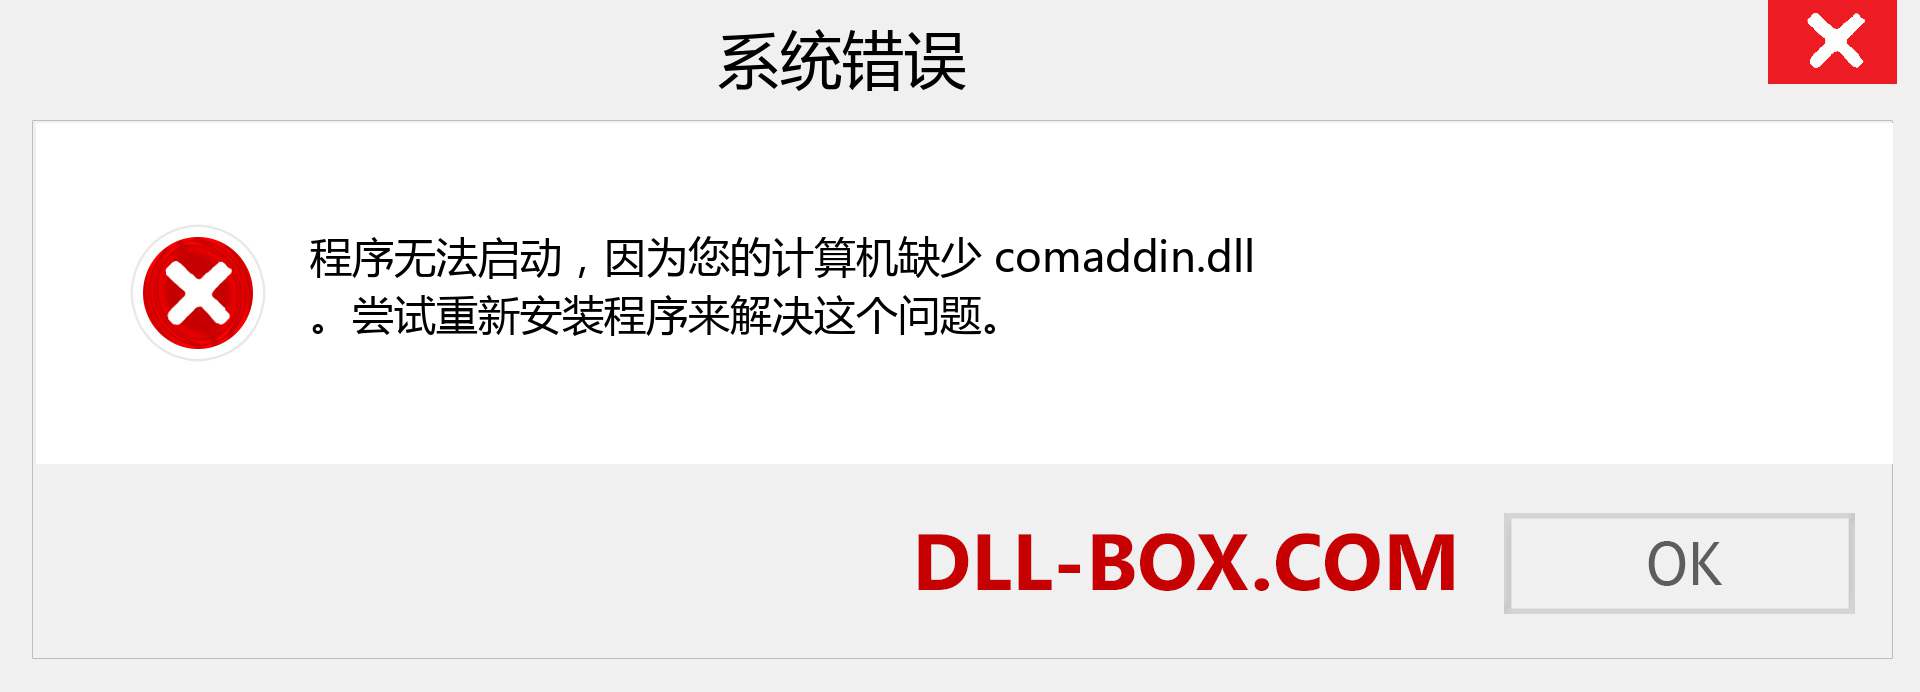 comaddin.dll 文件丢失？。 适用于 Windows 7、8、10 的下载 - 修复 Windows、照片、图像上的 comaddin dll 丢失错误